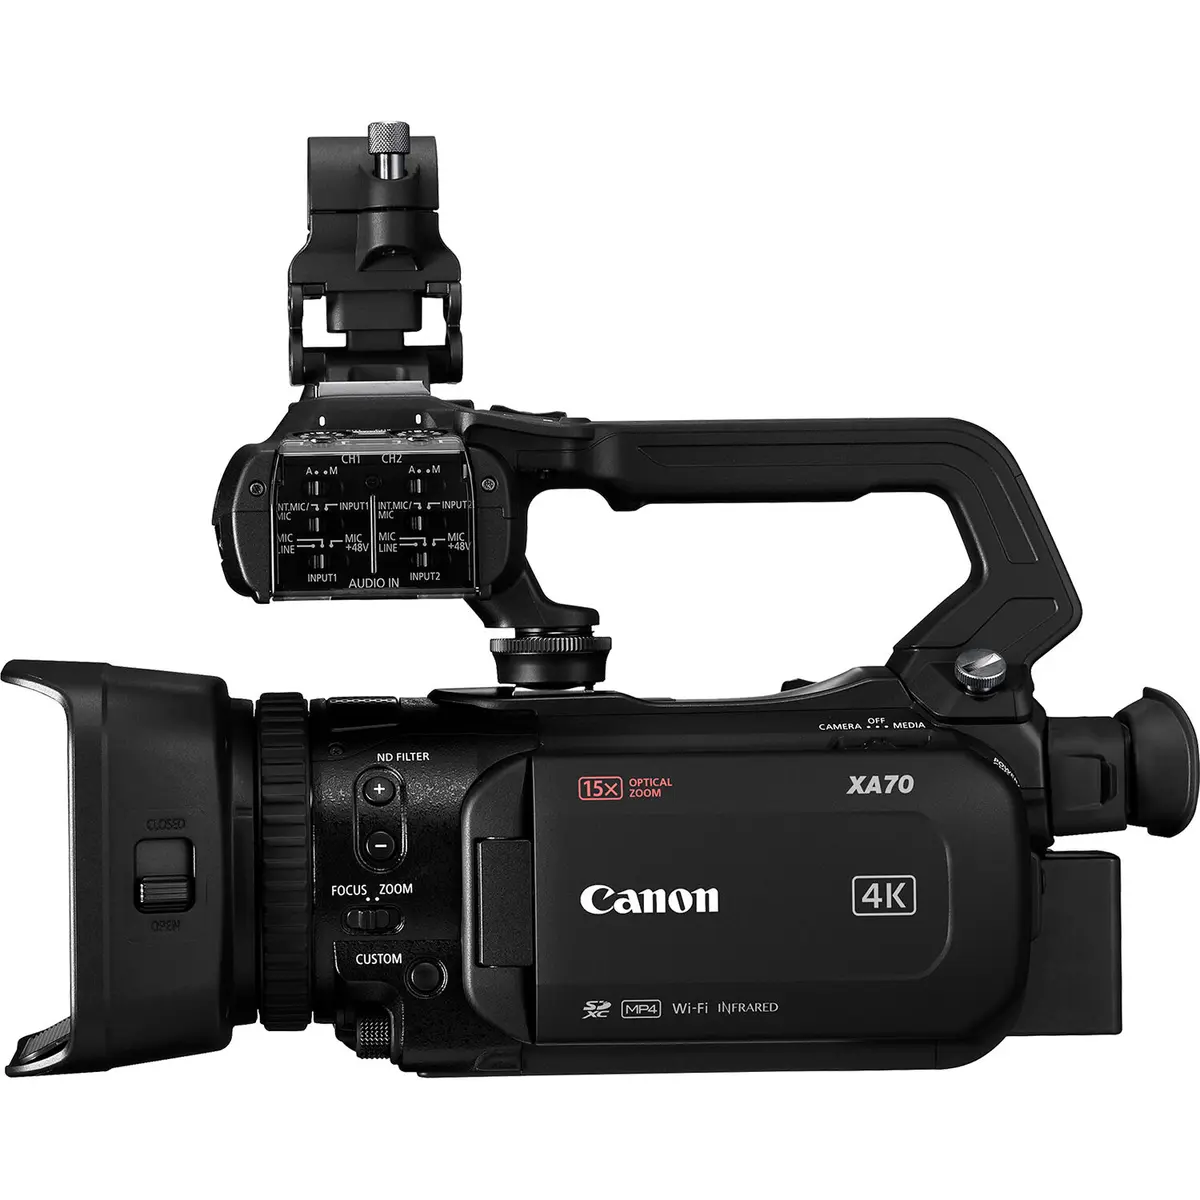 2. Canon XA70 Compact UHD 4K Camcorder